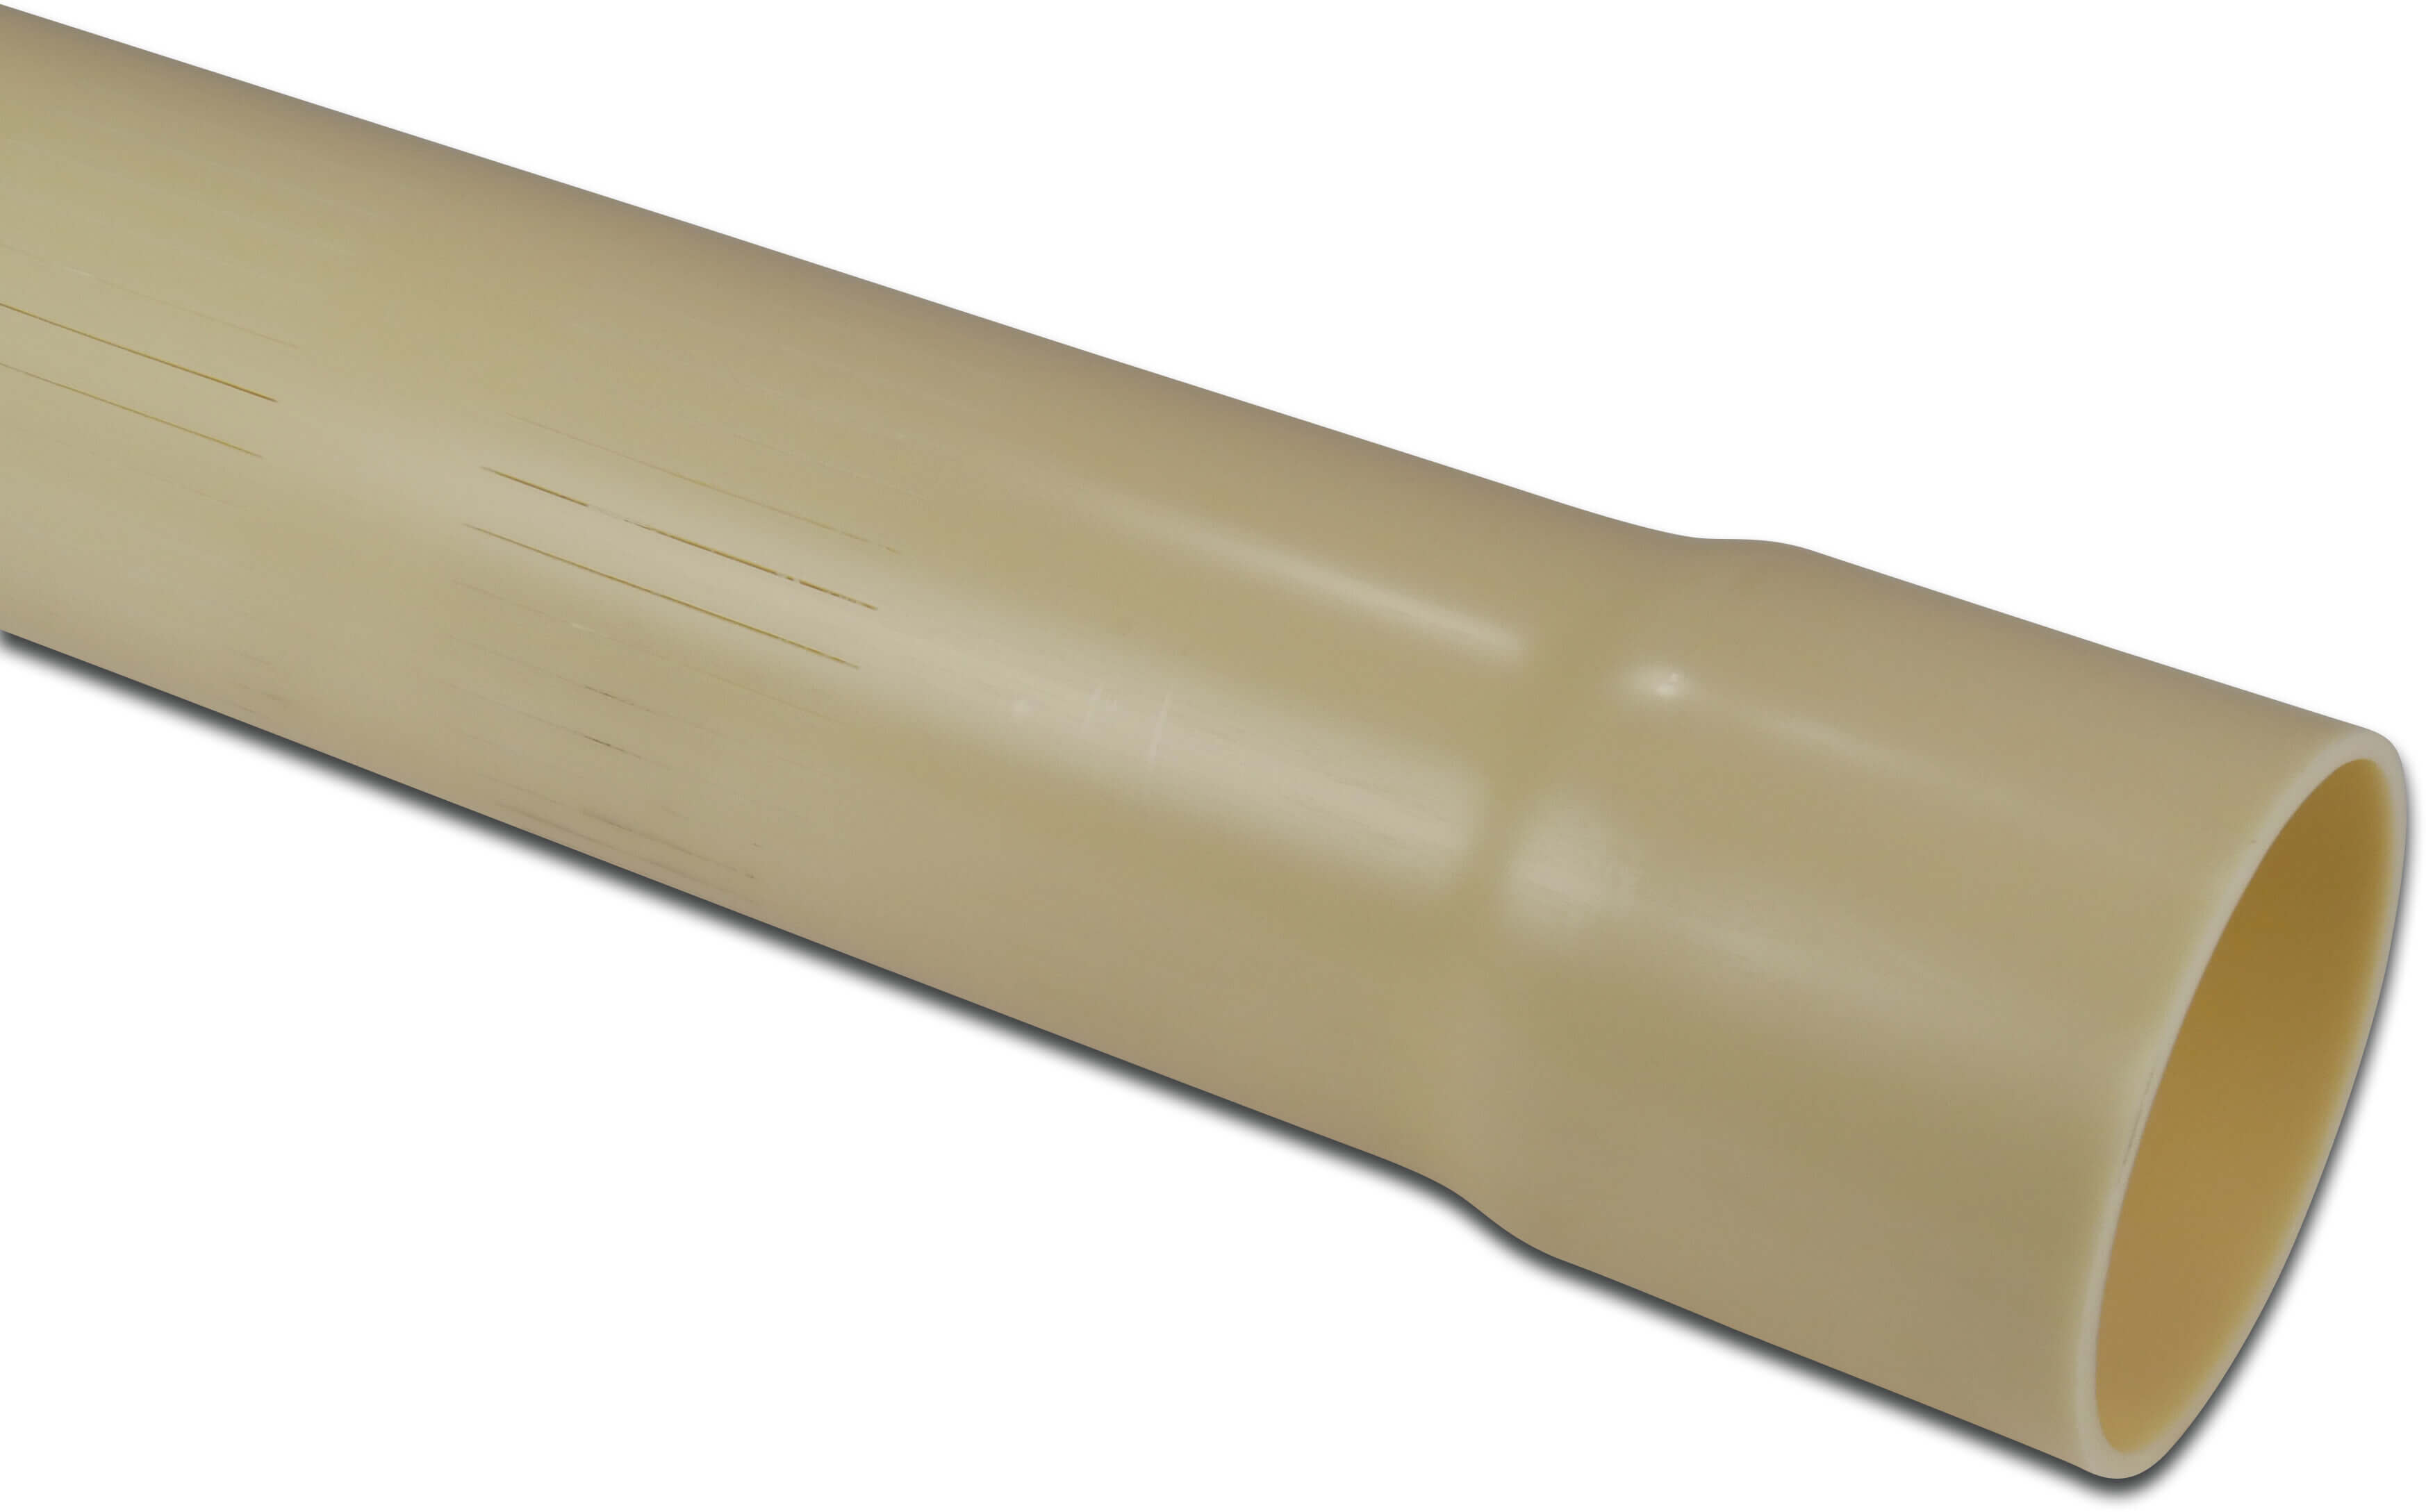 Rura szczelinowa PVC-U 63 mm x 2,5 mm KW x gładkie 5m 0,3 mm ISO-PN8 kremowy 5m